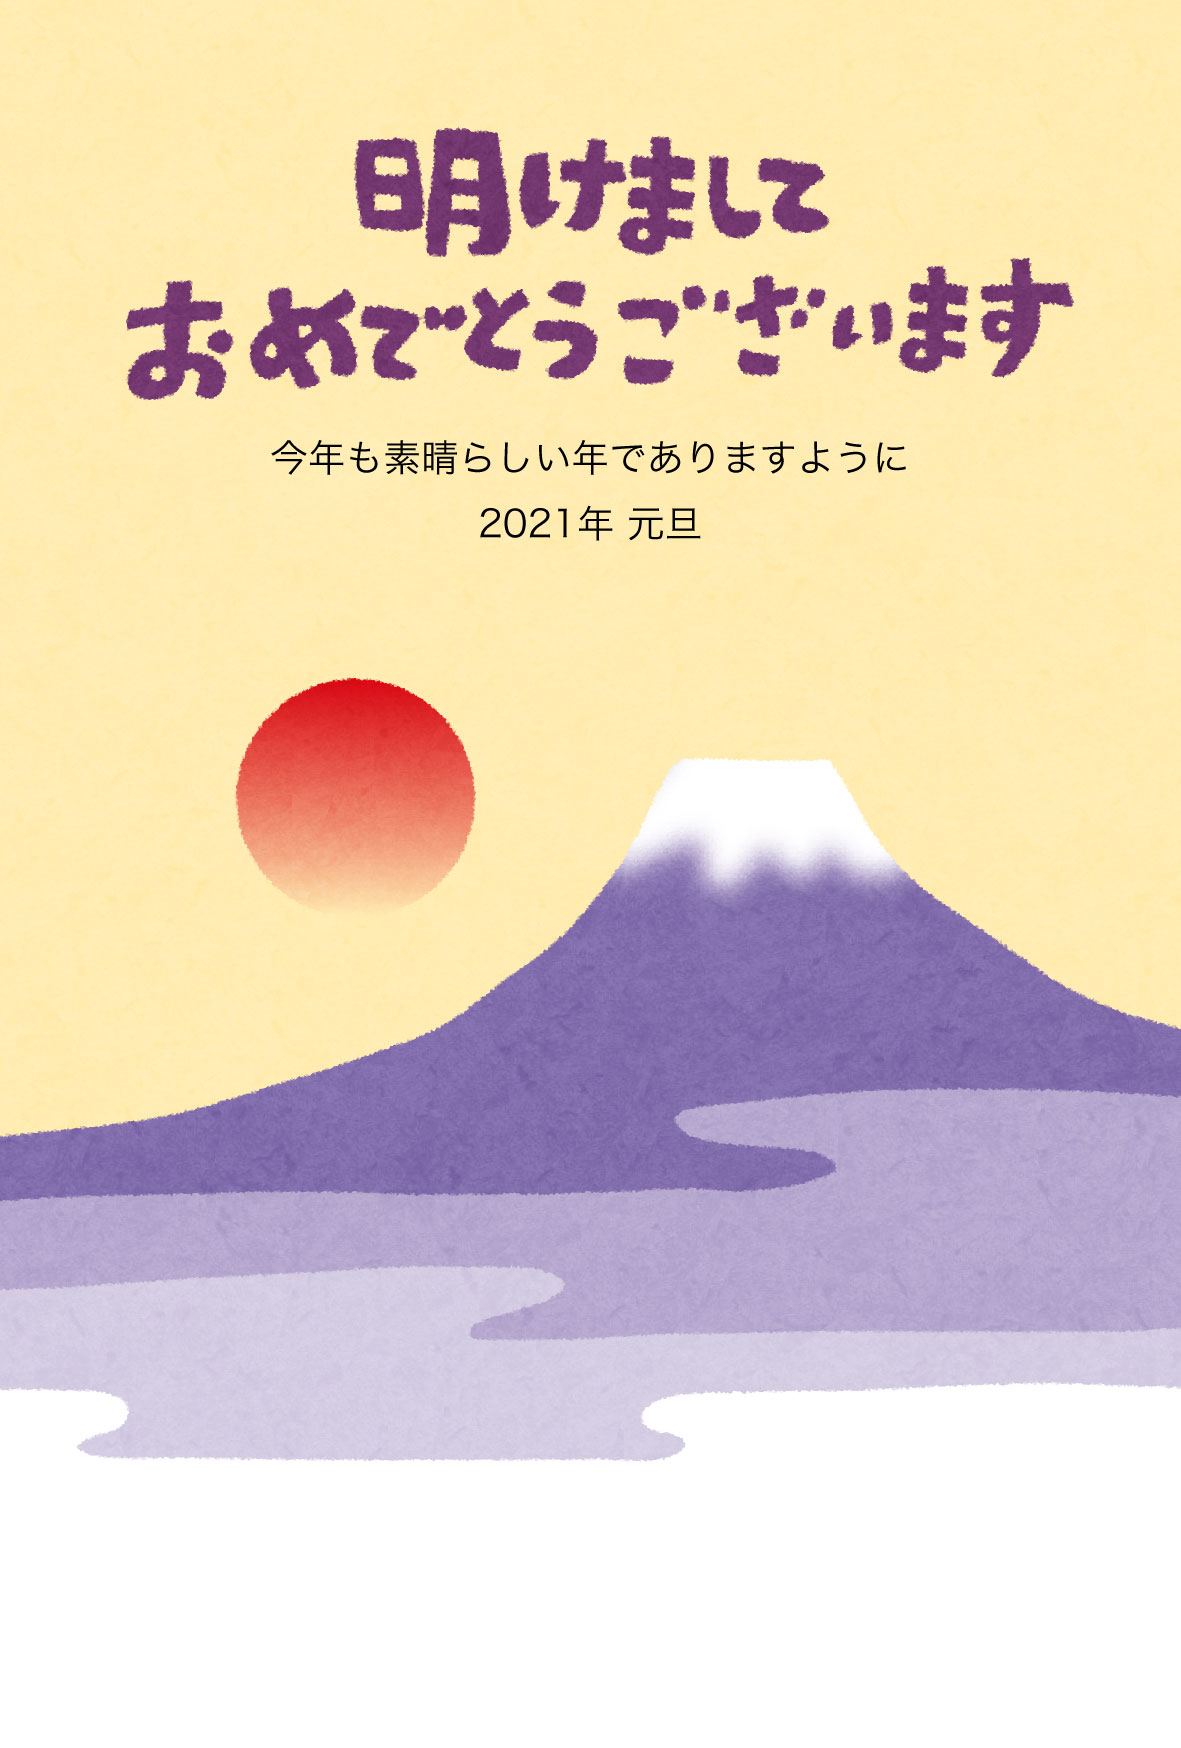 富士山と初日の出のイラスト年賀状 かわいい無料年賀状テンプレート ねんがや